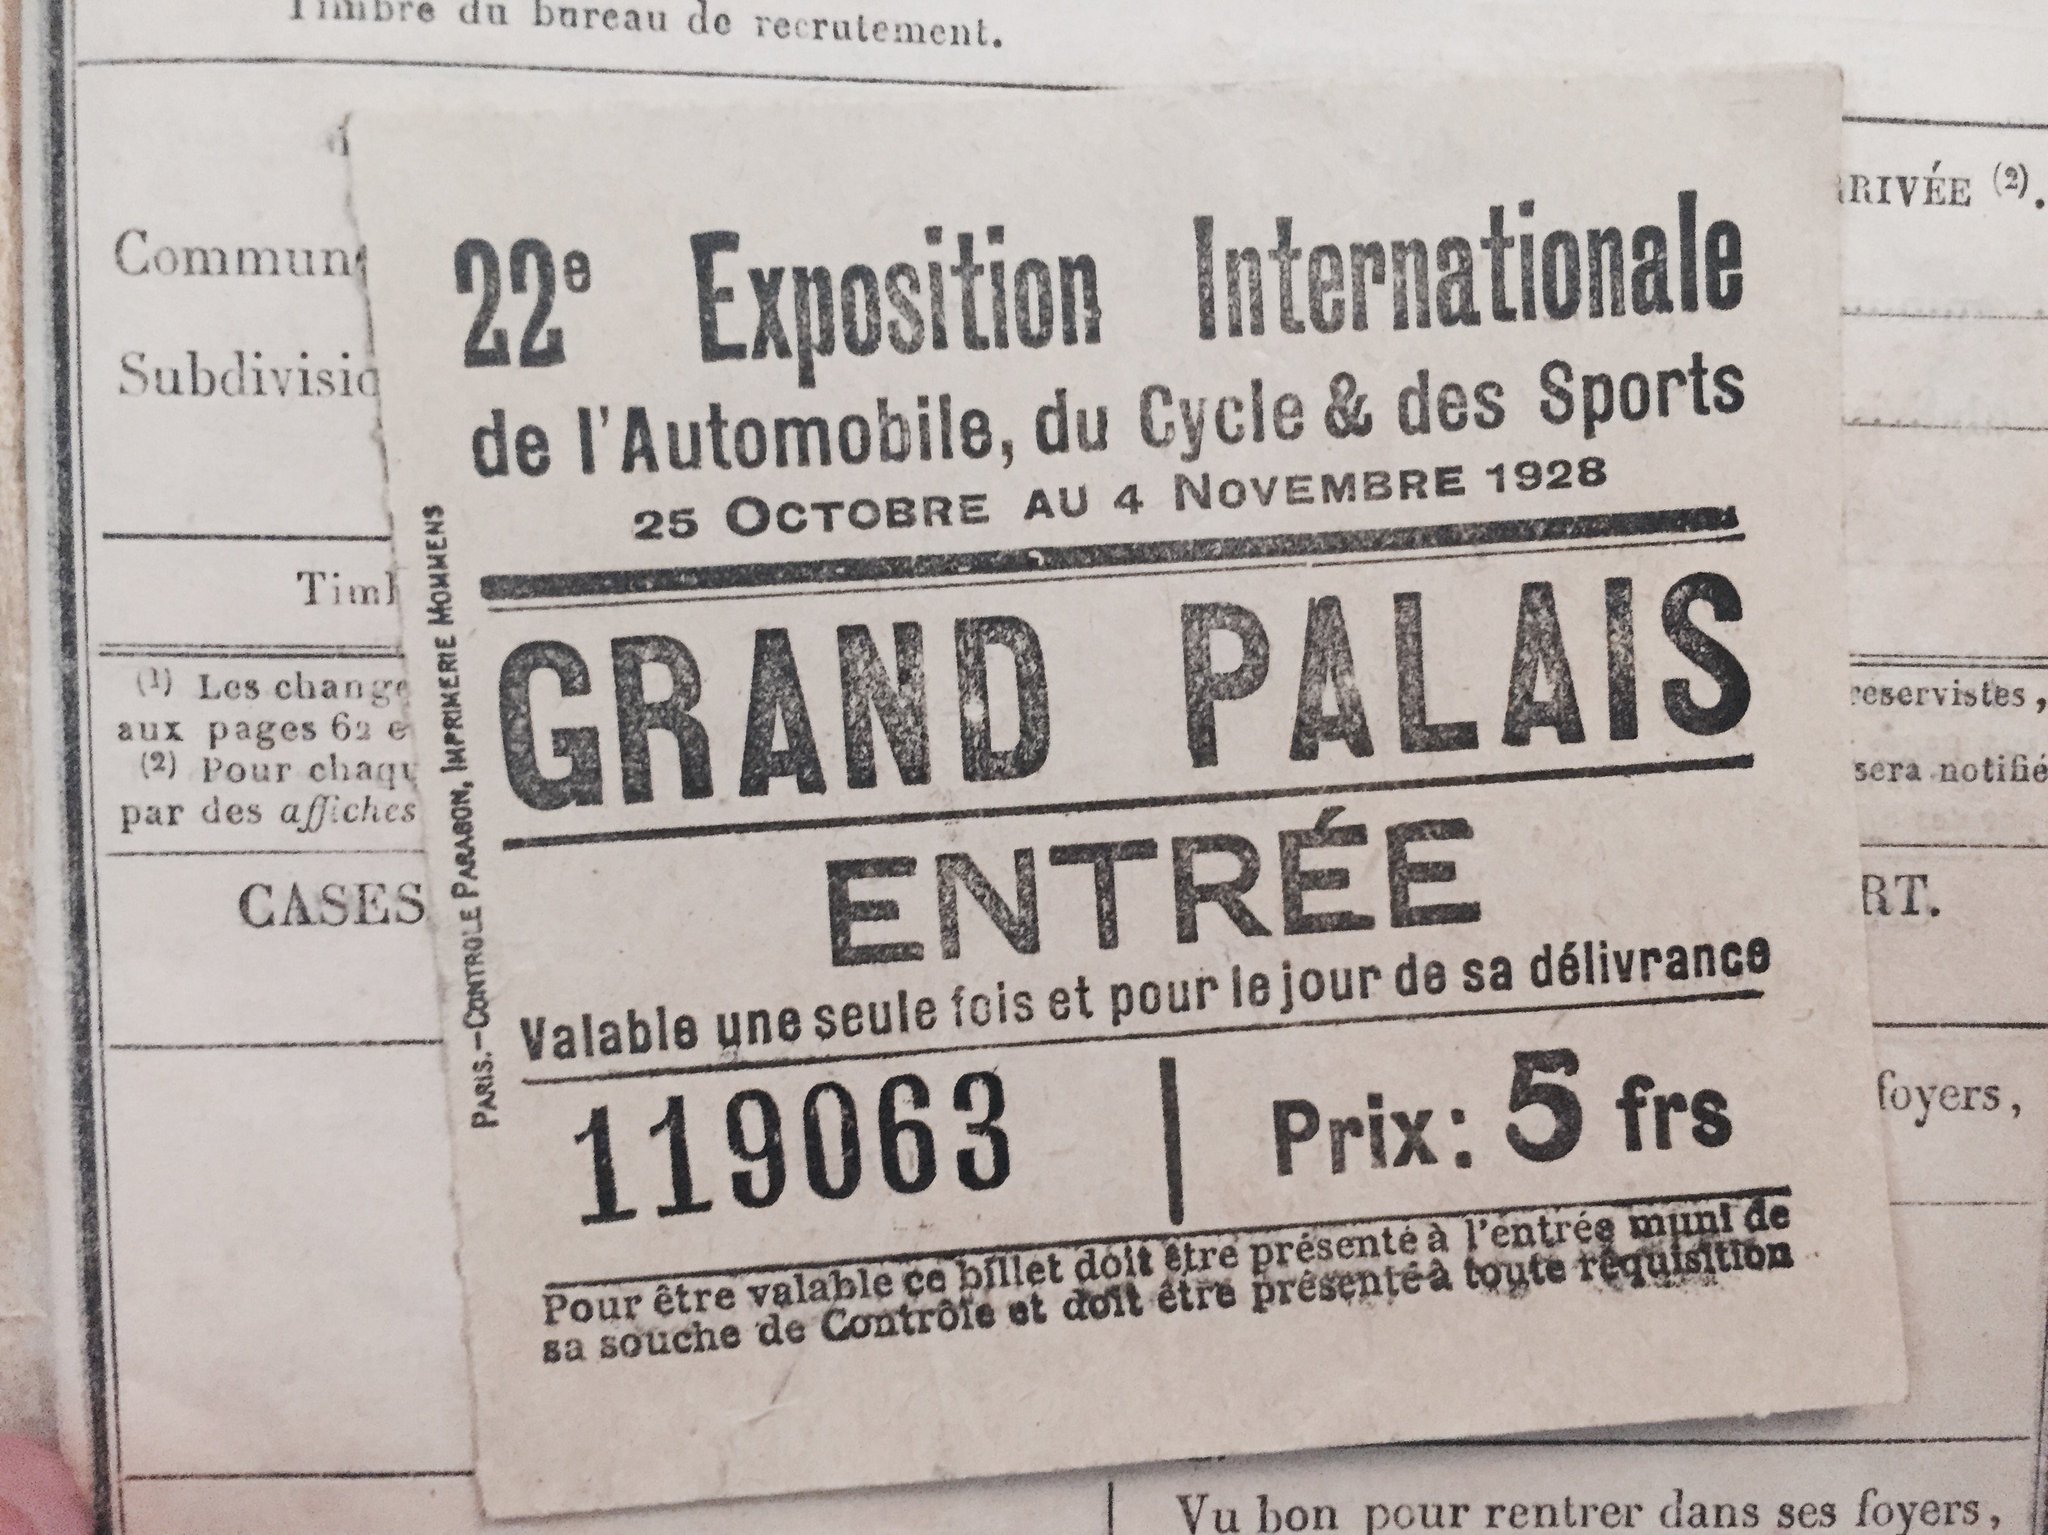 Il y a aussi un ticket pour le Grand palais en 1928... #Madeleineproject https://t.co/DQHJLw2Q21